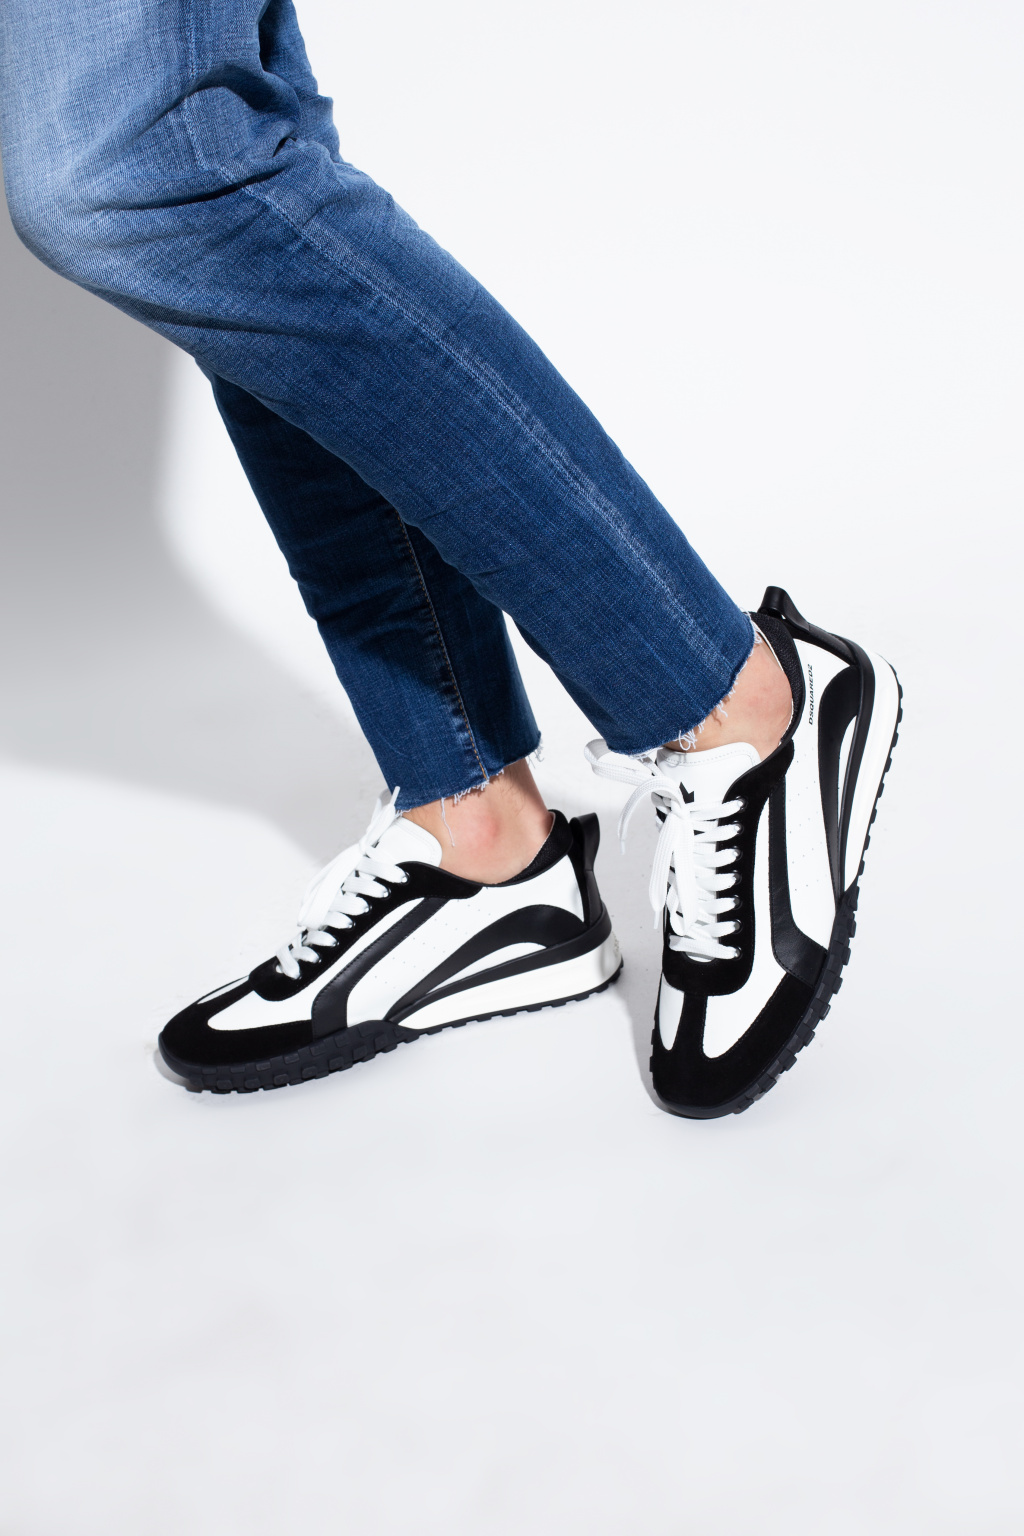 Dsquared2 'Legend' sneakers | Men's Shoes | Vitkac